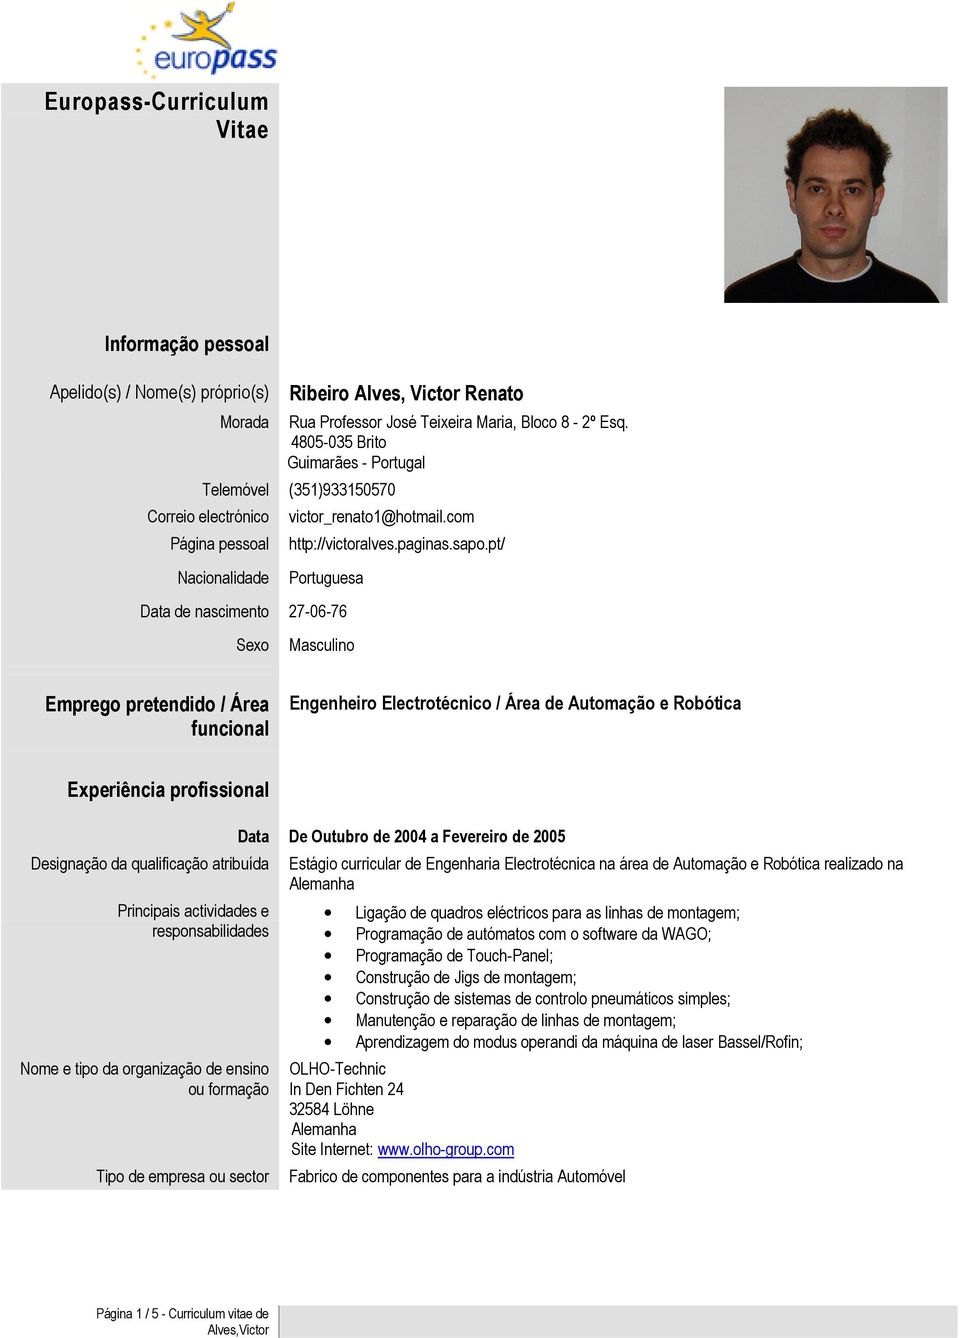 pt/ Nacionalidade Portuguesa Data de nascimento 27-06-76 Sexo Masculino Emprego pretendido / Área funcional Engenheiro Electrotécnico / Área de Automação e Robótica Experiência profissional Data De